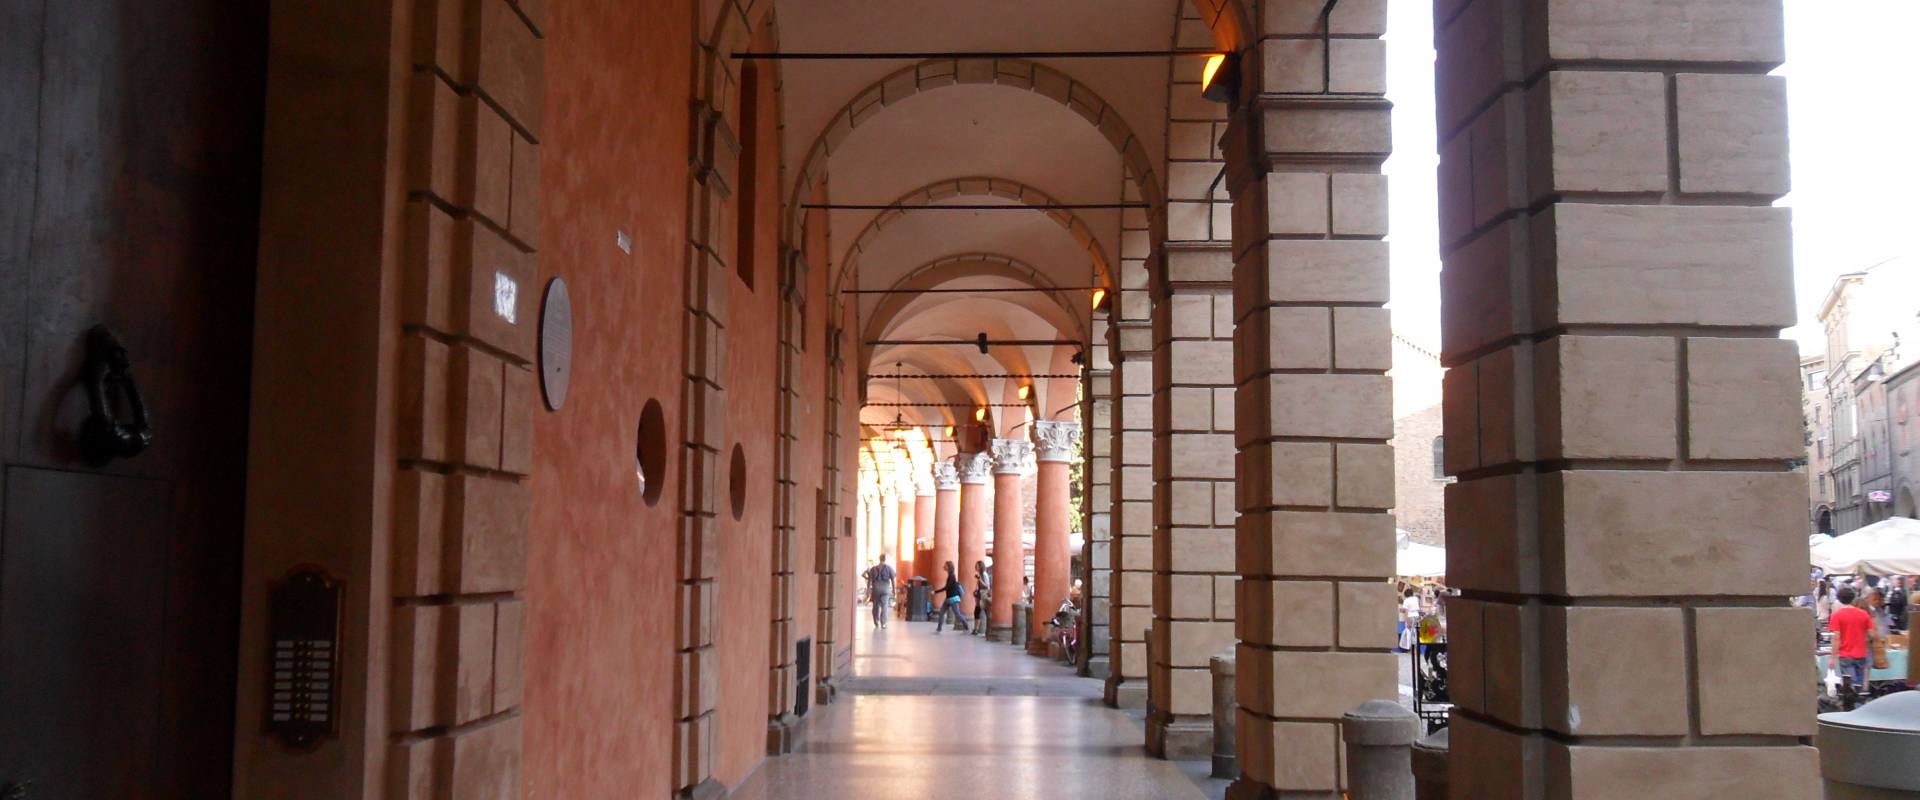 Portici at Palazzo Isolani photo by Alejandro